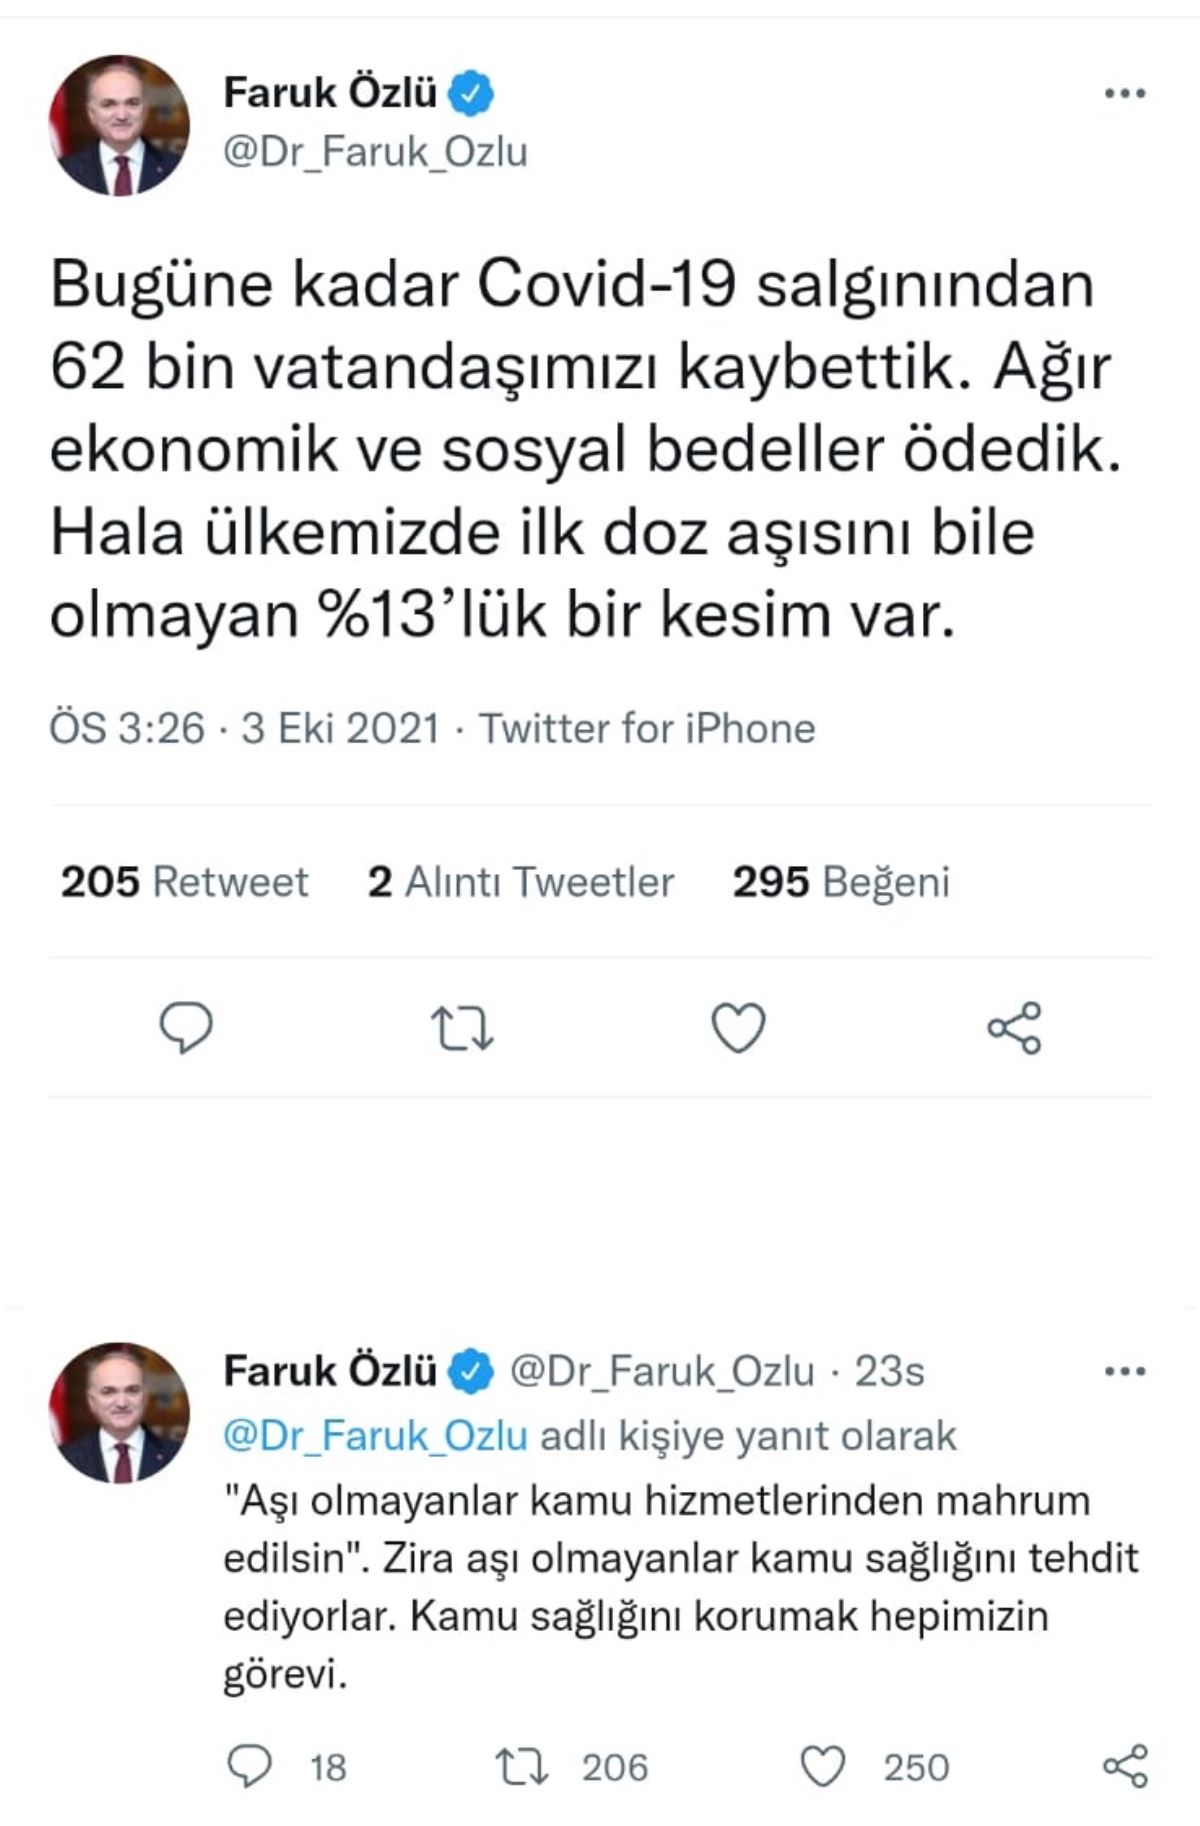 AKP'li başkan Faruk Özlü'den 'aşı olmayan kamu hizmetlerinden mahrum edilsin' önerisi